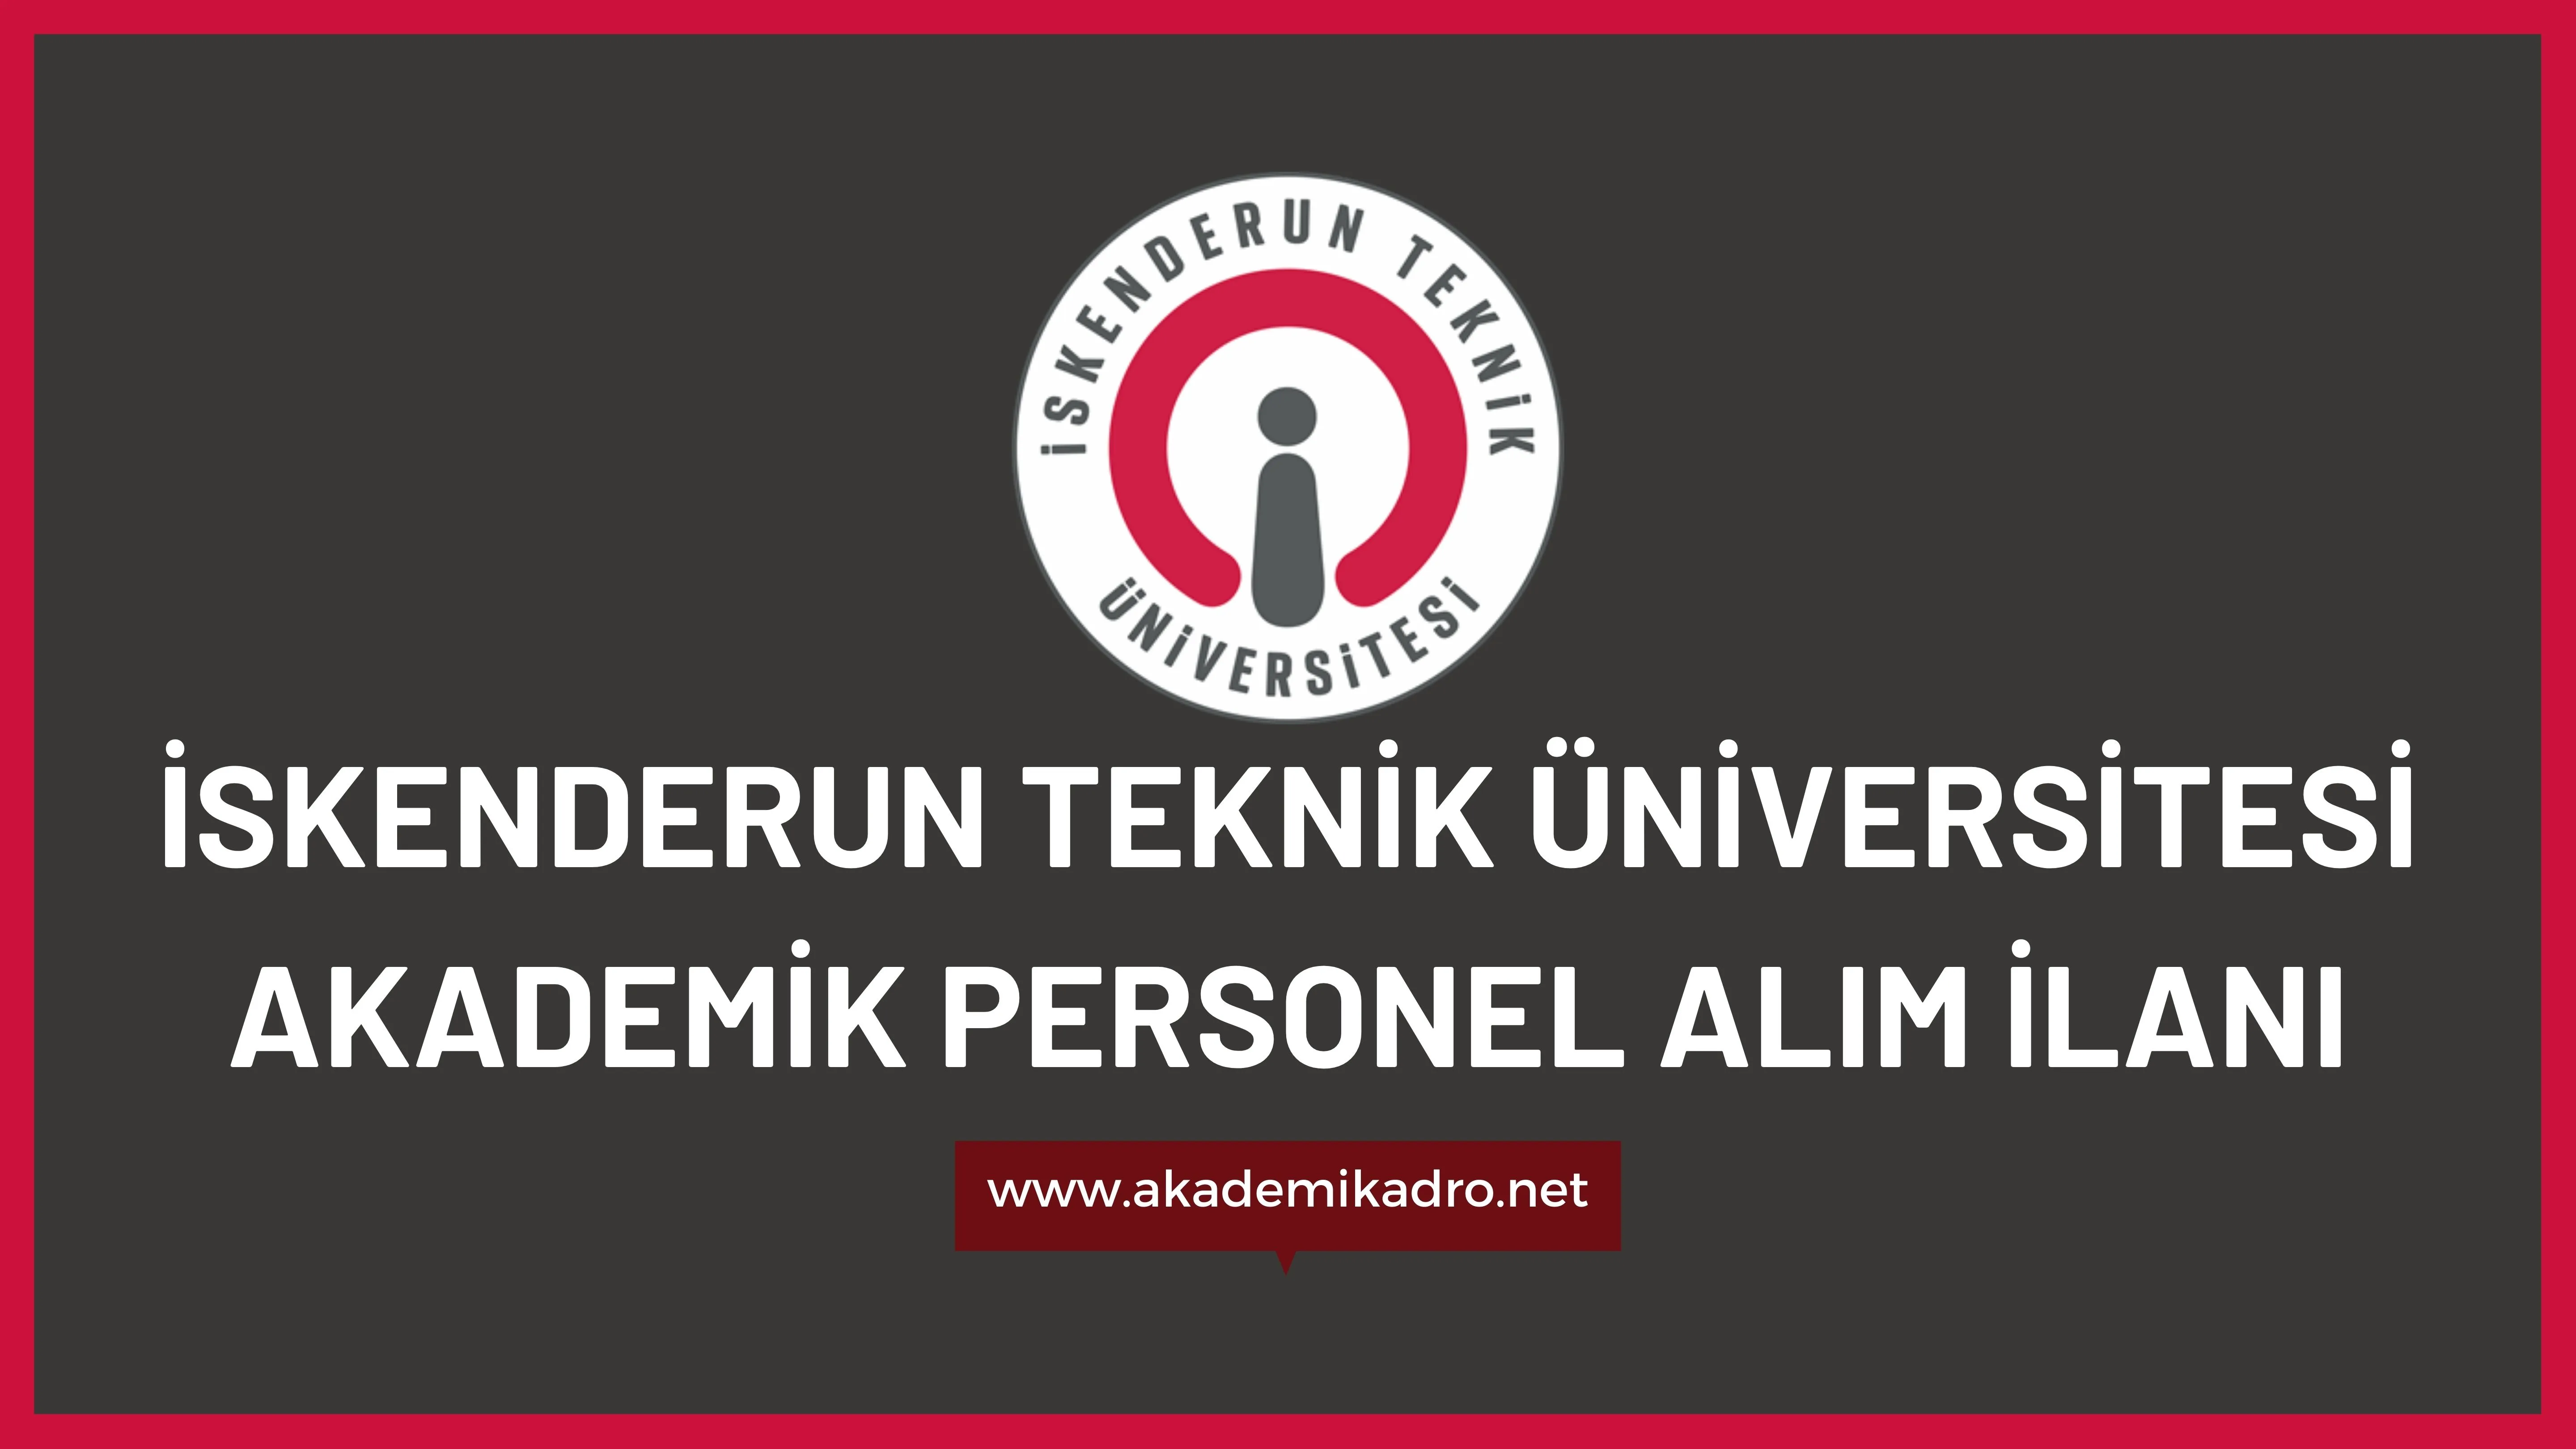 İskenderun Teknik Üniversitesi birçok alandan 16 akademik personel alacak.